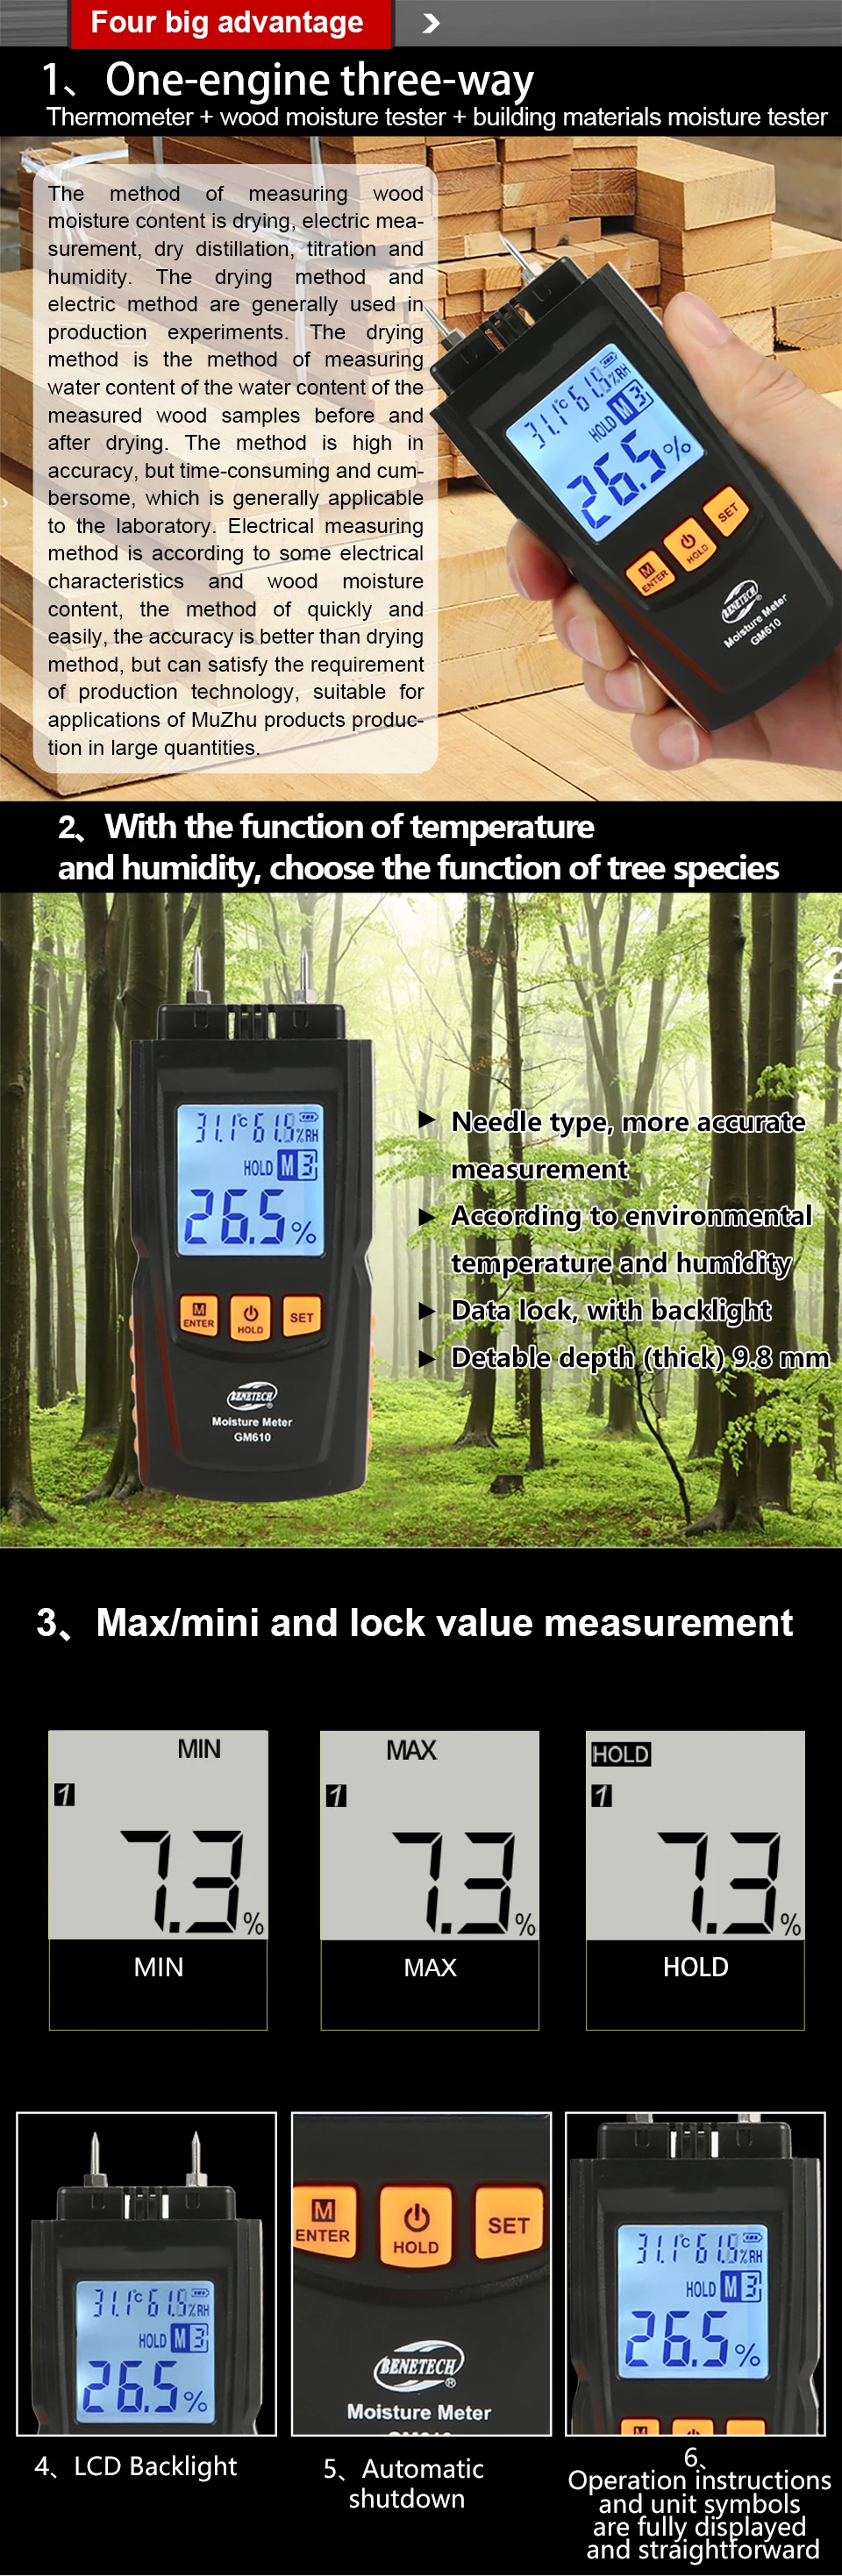 BENETECH измеритель влажности древесины тестер влажности древесины детектор влажности два длинных зонда GM620